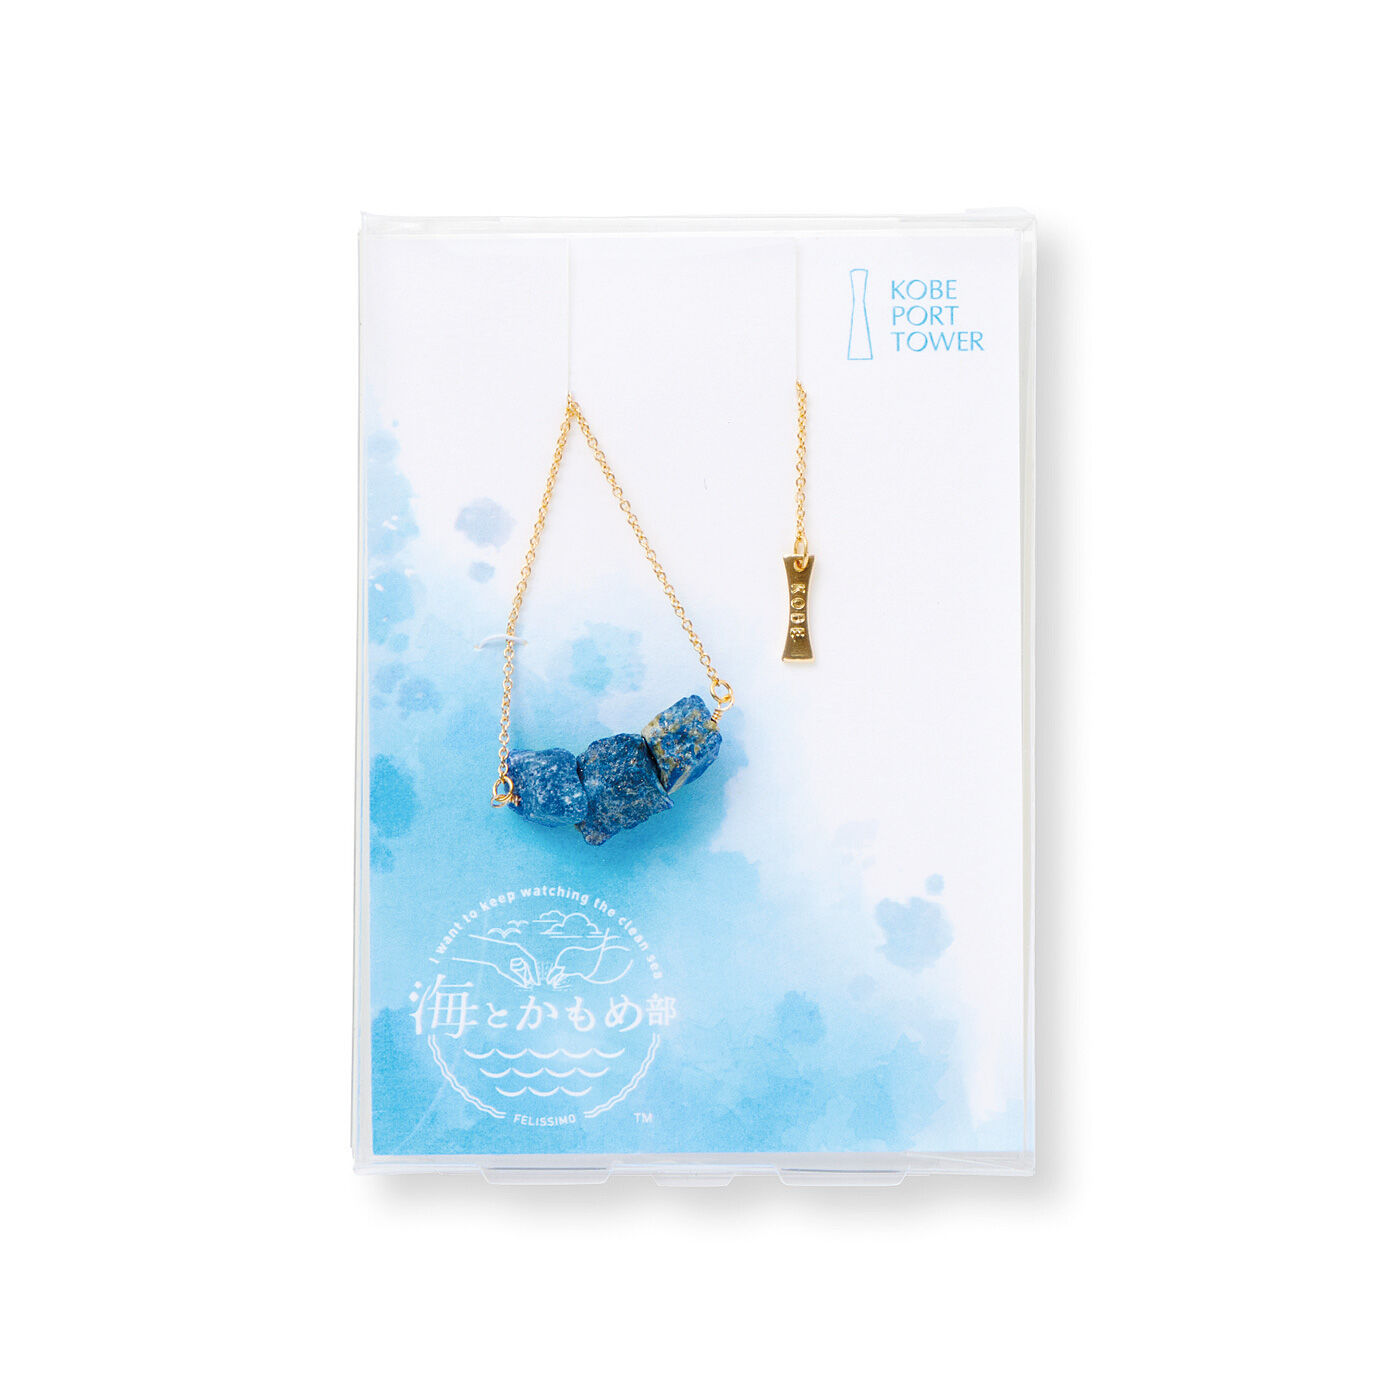 フェリシモの雑貨 Kraso|海とかもめ部×神戸ポートタワー　海の色を映した天然石ブレスレットの会|オリジナルパッケージでお届け